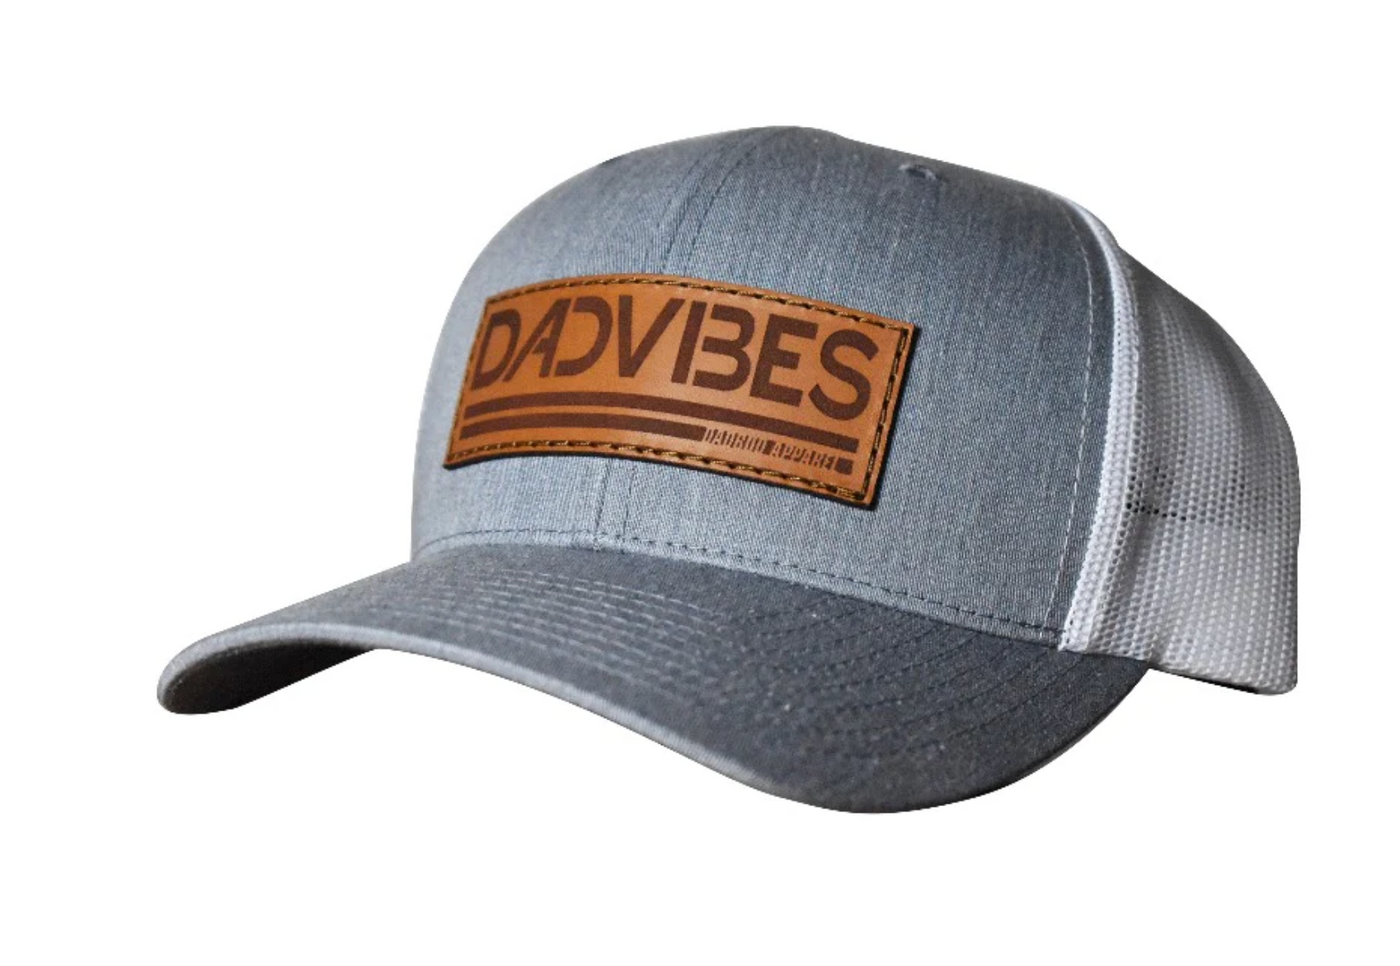 DadVibes Trucker Hat - Heather Grey & White Mesh